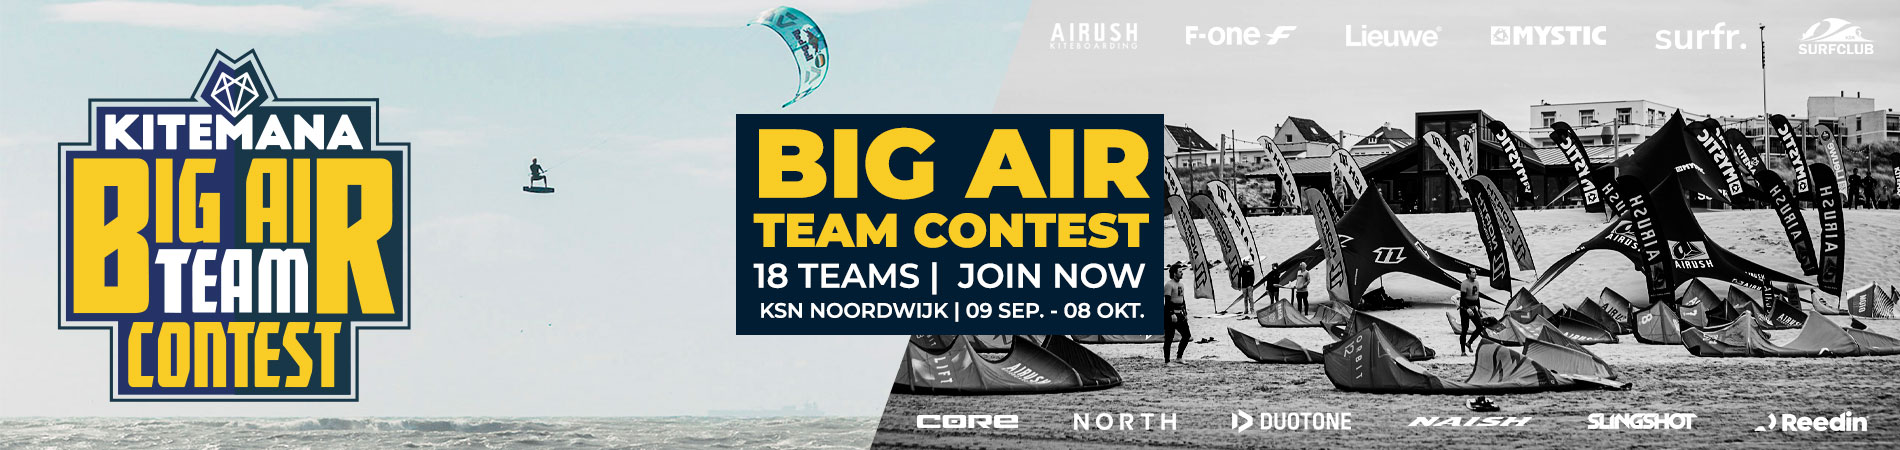 Big Air Team Contest